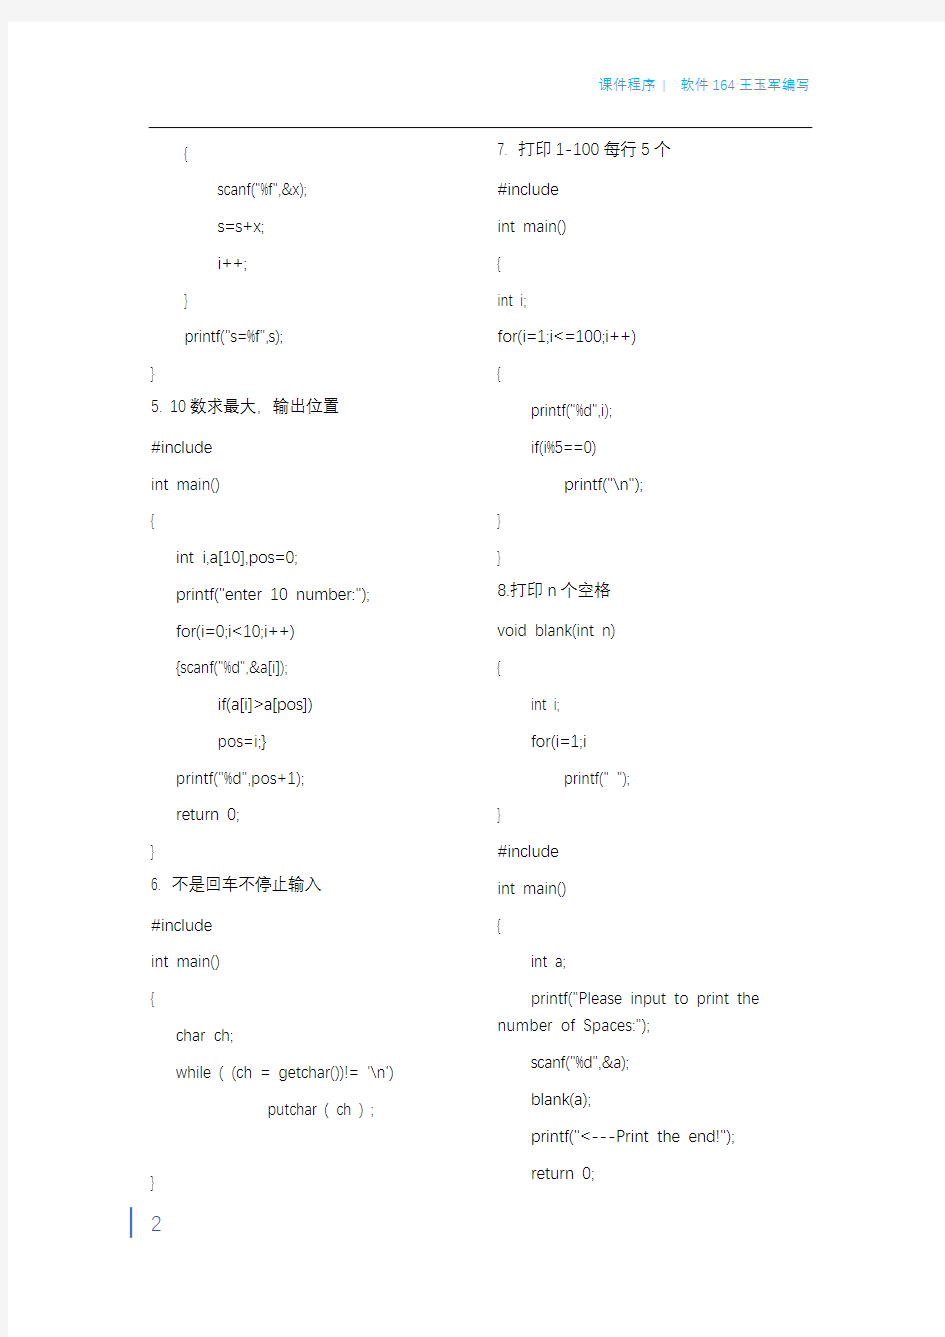 青岛理工大学c语言程序打印版